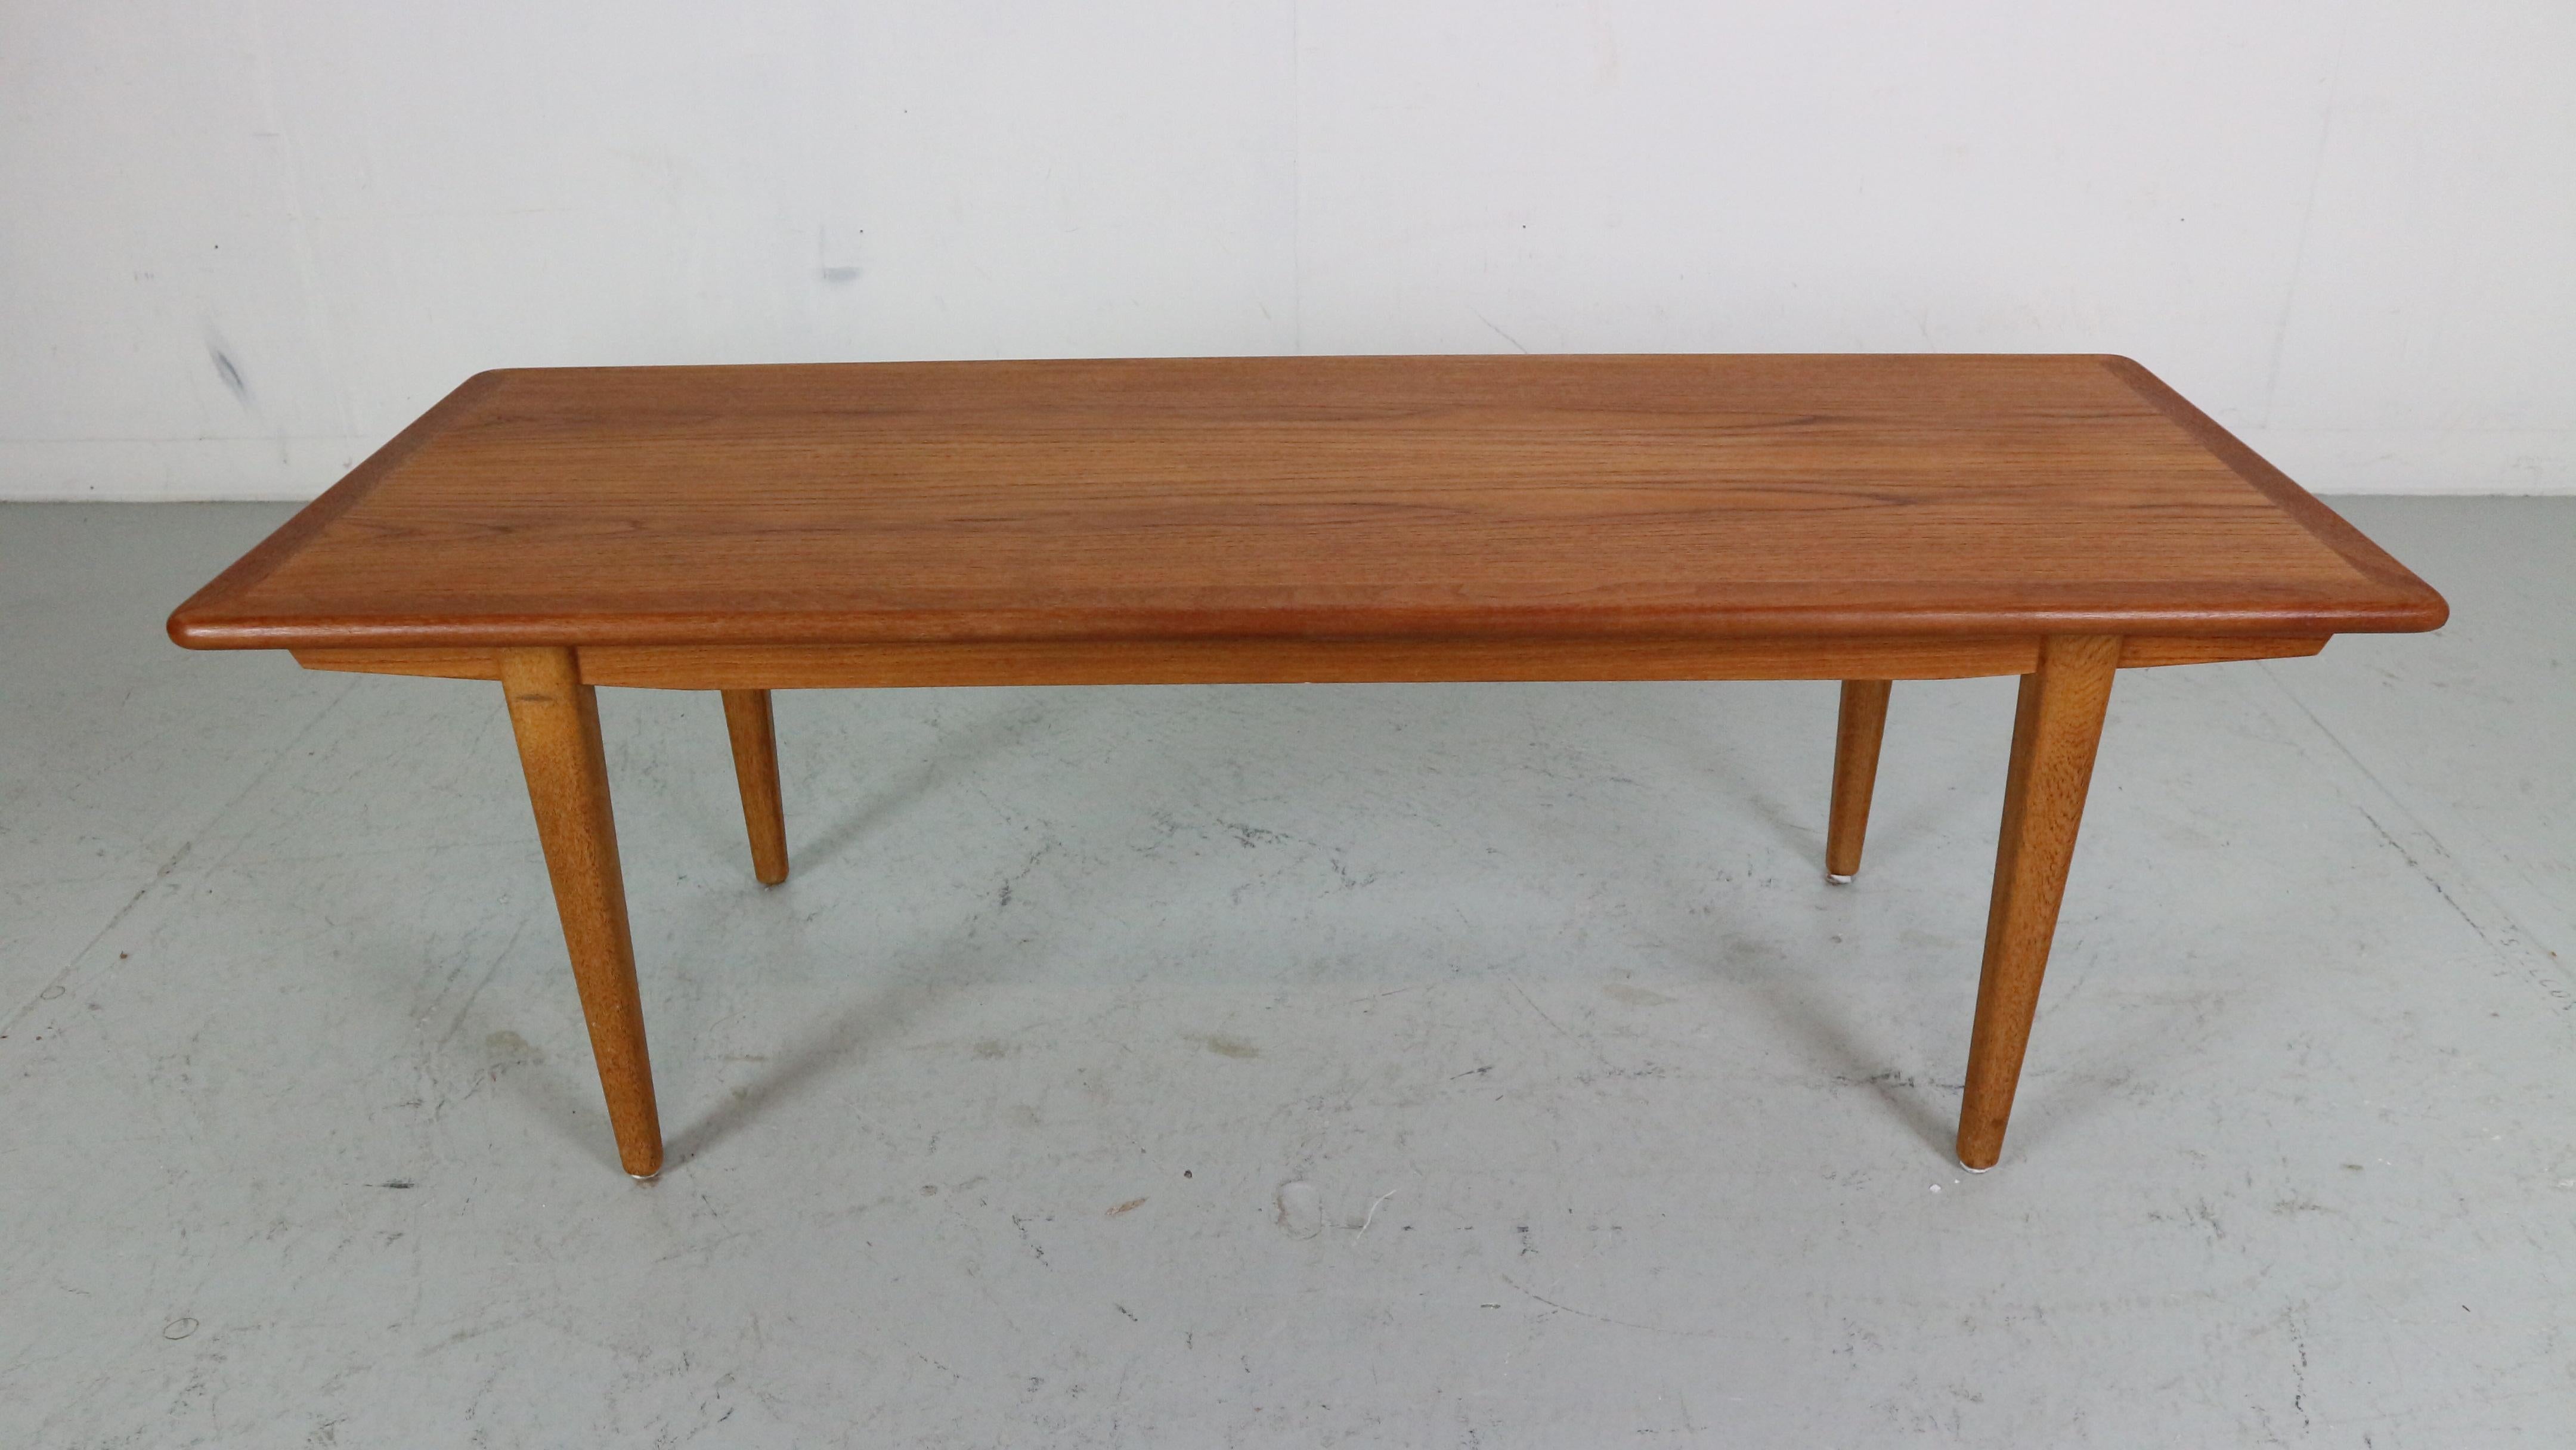 Table basse en teck d'époque moderne du milieu du siècle dernier, fabriquée dans les années 1960 au Danemark.

Cette table basse minimaliste est fabriquée en bois de teck massif et se trouve dans un excellent état vintage.

